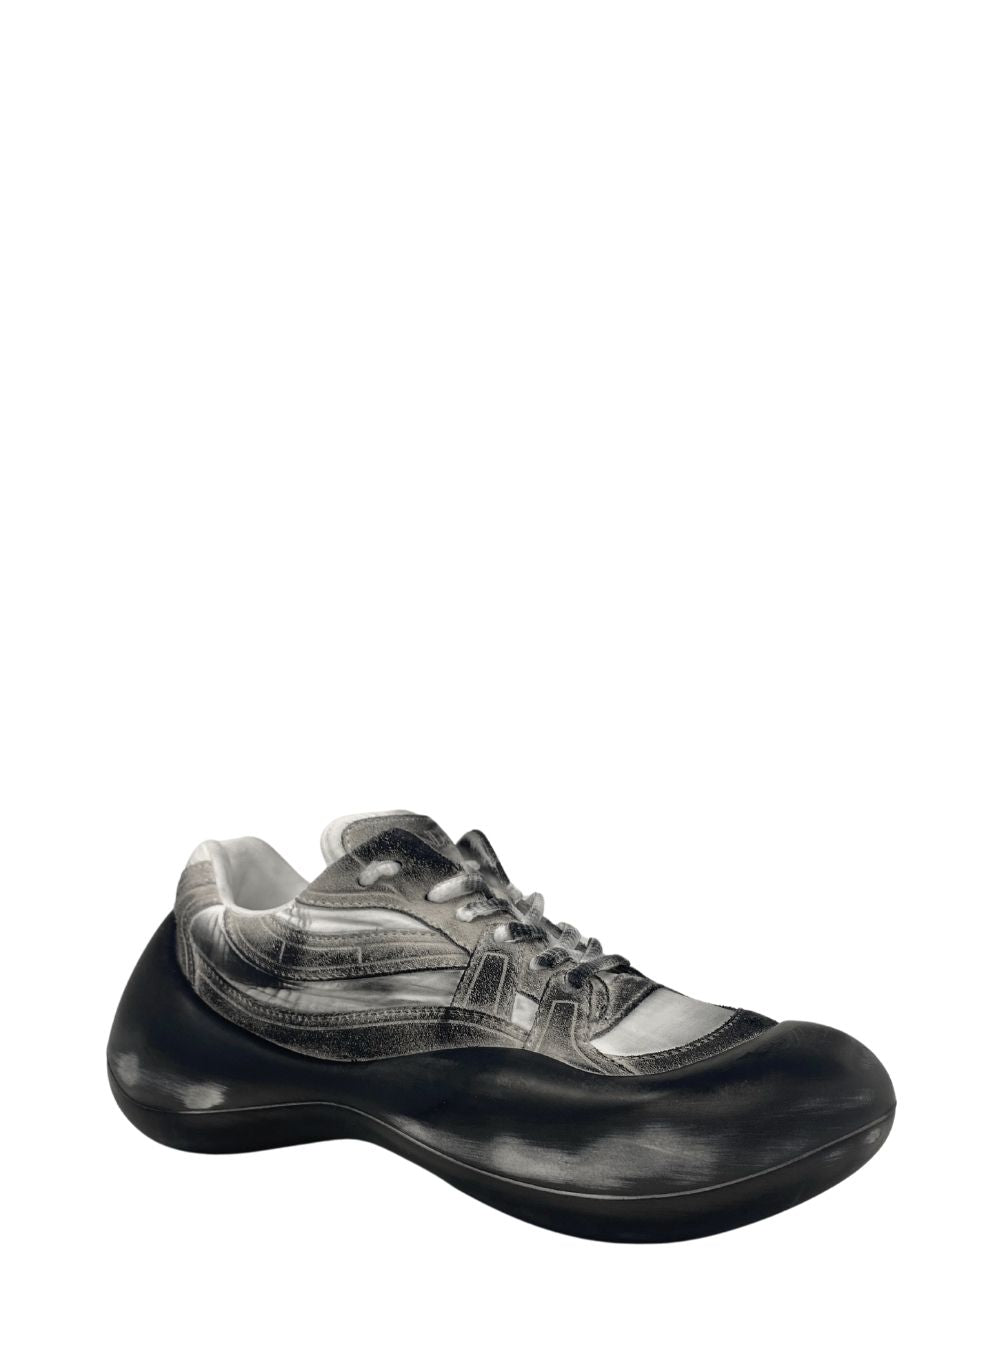 J.W. ANDERSON | Bumper Sneaker